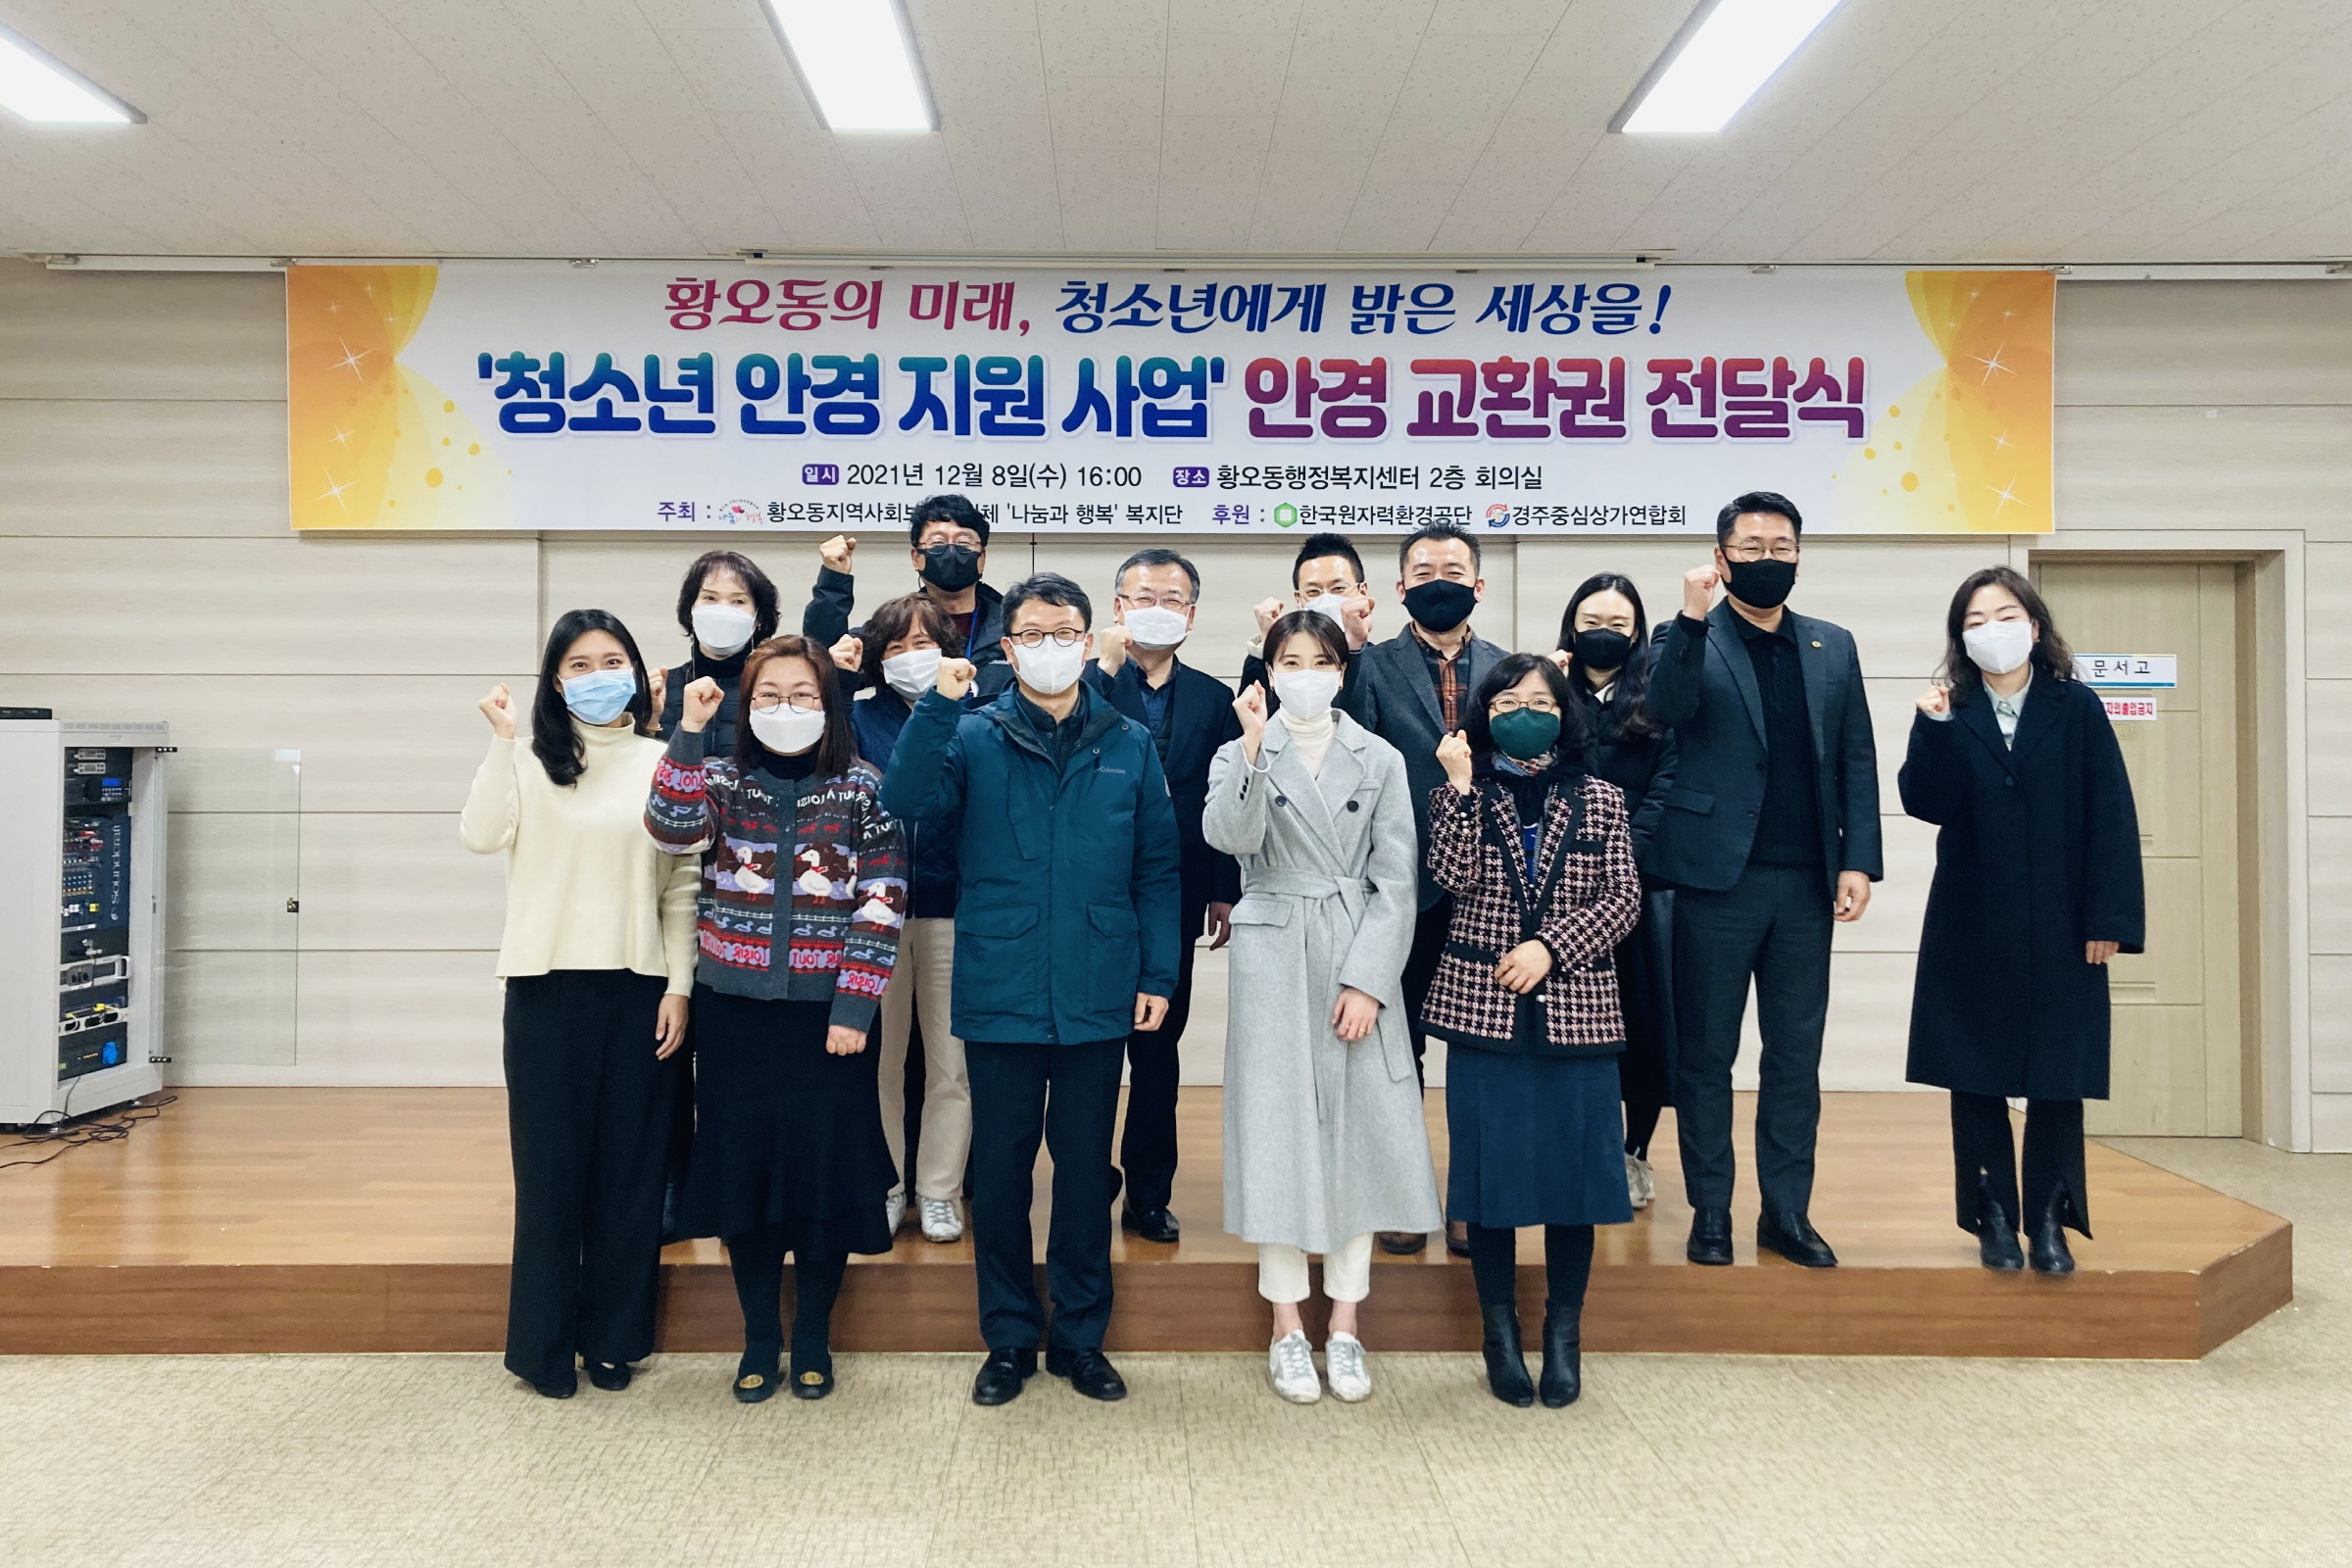 황오동 나눔과 행복복지단에서 청소년 안경 지원 쿠폰 전달식을 가지는 모습과 단체사진 촬영 모습